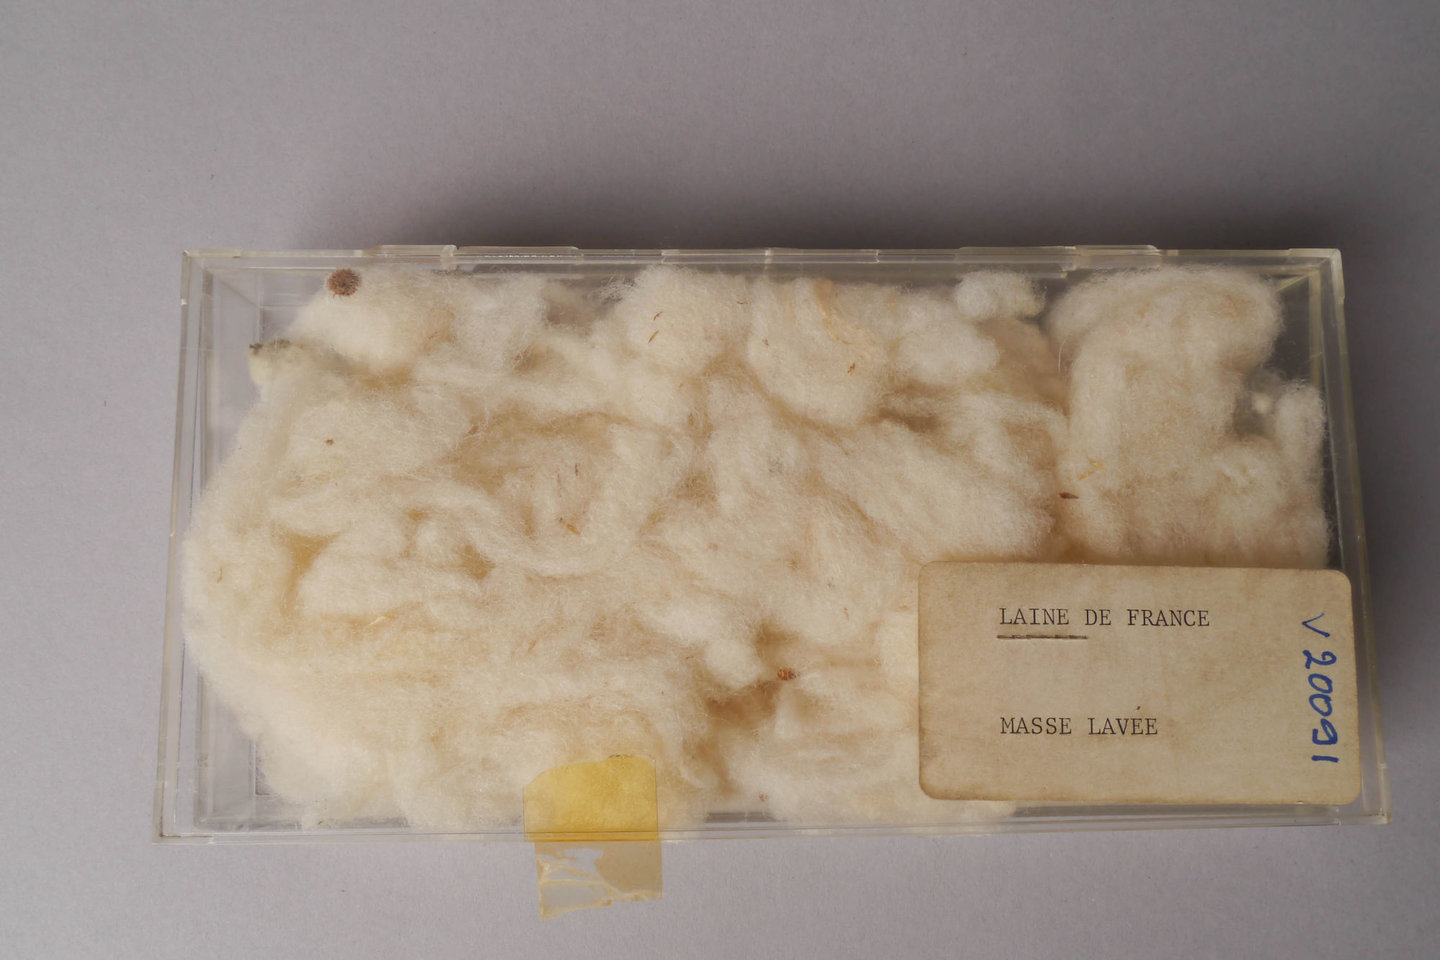 Staal van gewassen wol uit Frankrijk